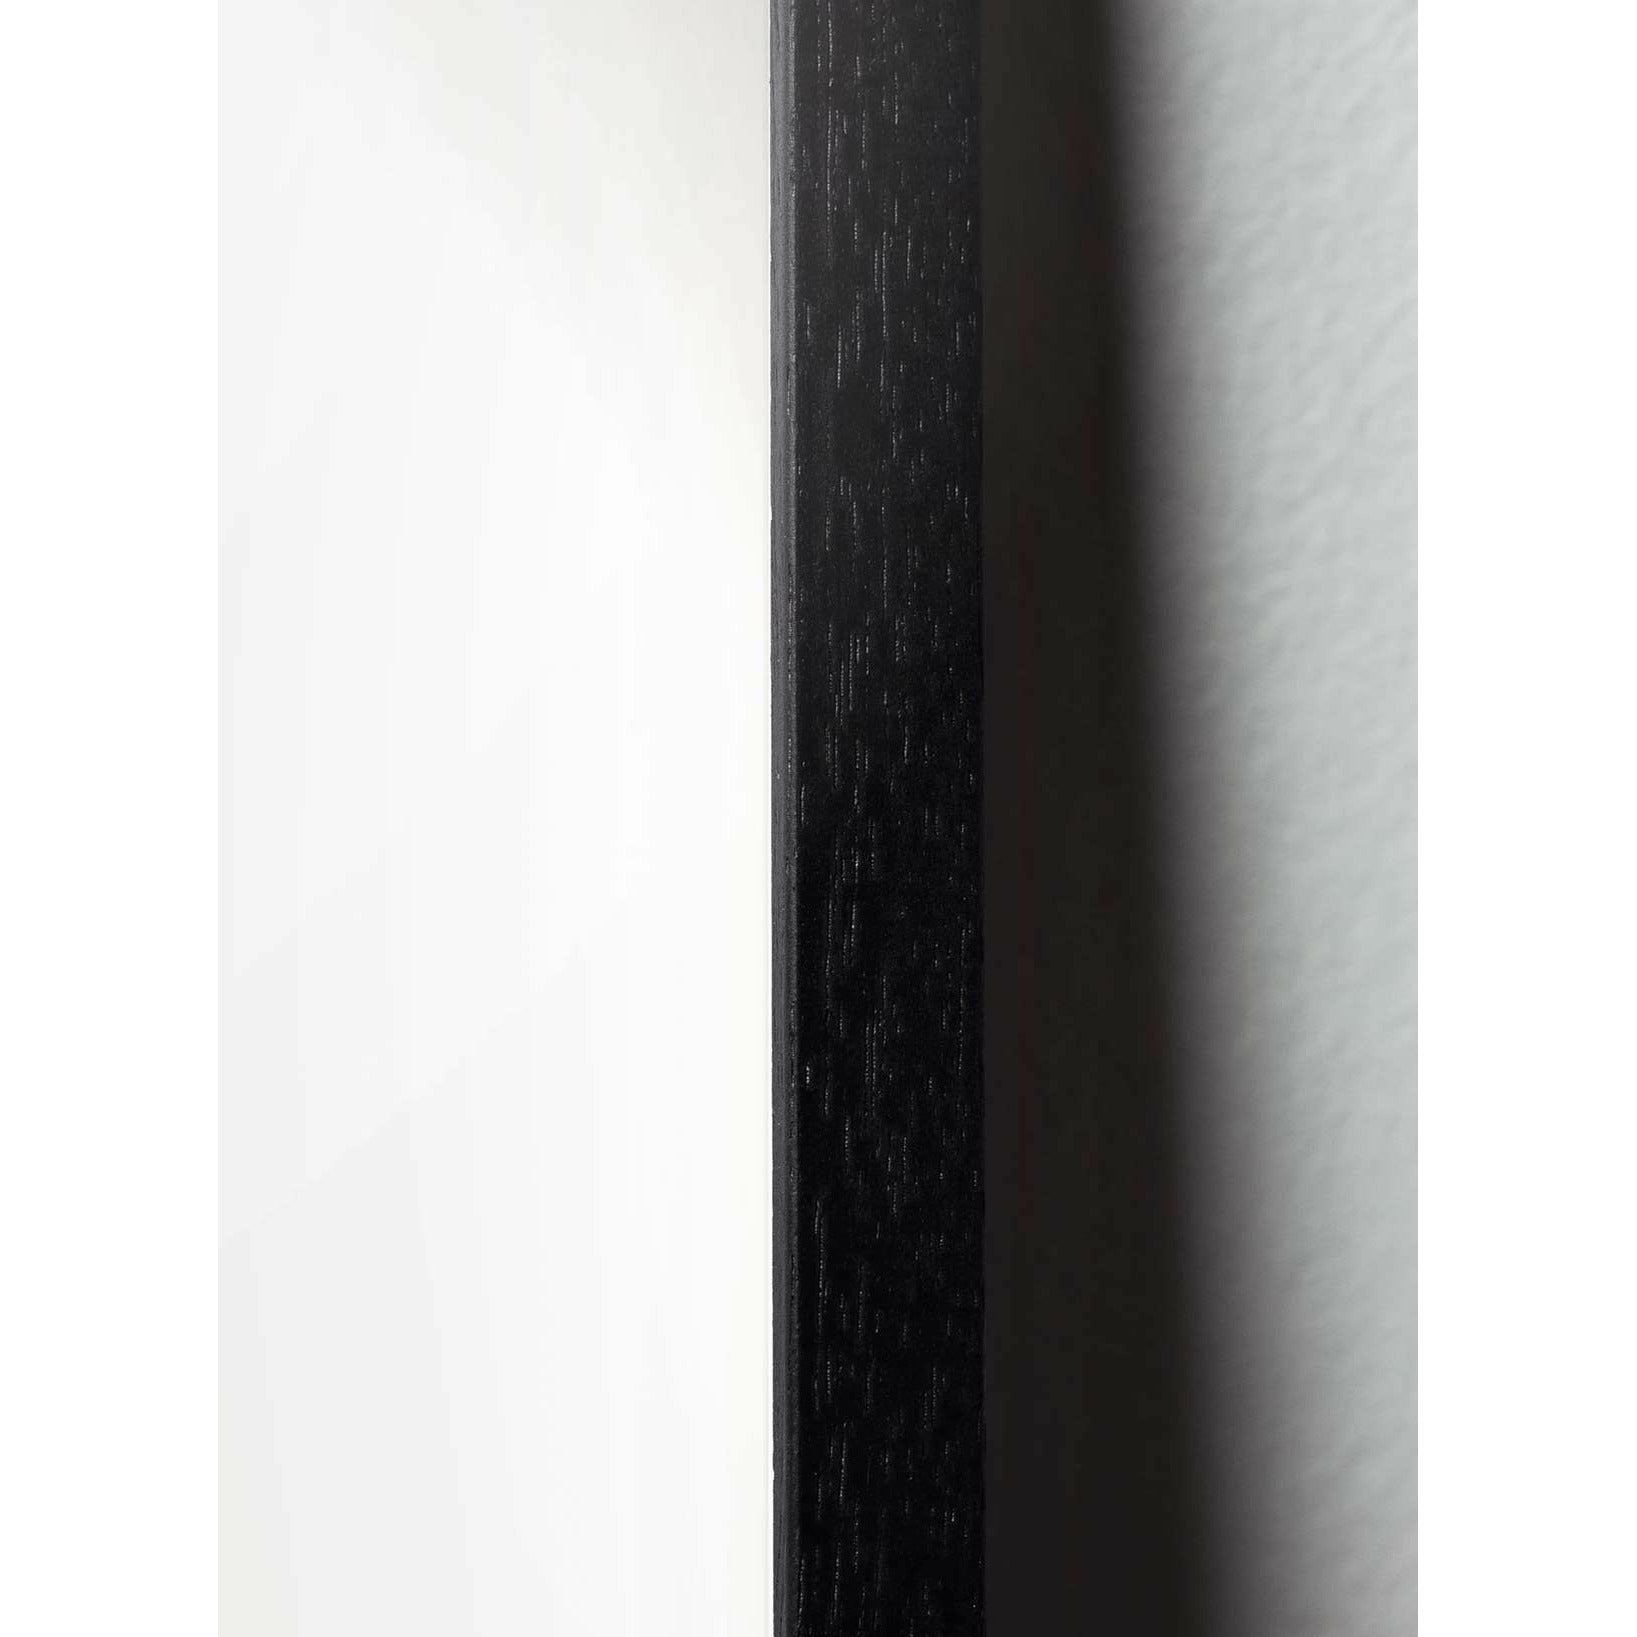 Póster de la línea de osito de peluche, marco en madera lacada negra de 70x100 cm, fondo blanco